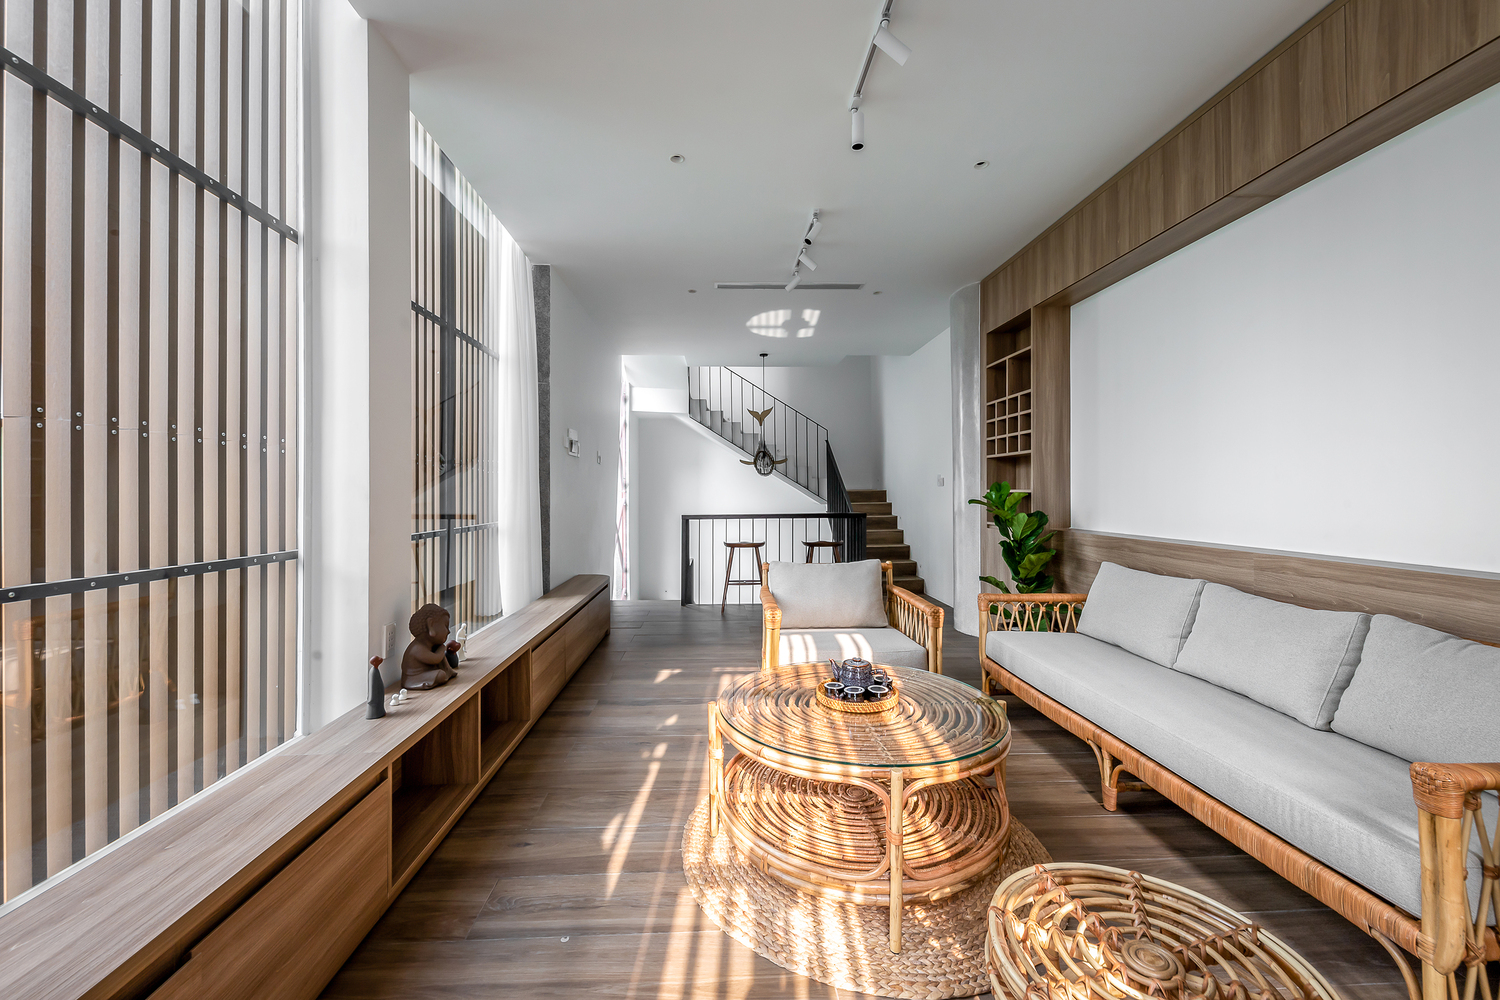 Tông màu trắng chủ đạo từ tường và trần tạo cảm giác rộng rãi hơn cho không gian. Trong khi đó, nội thất gỗ mang lại sự ấm áp, thân thiện.